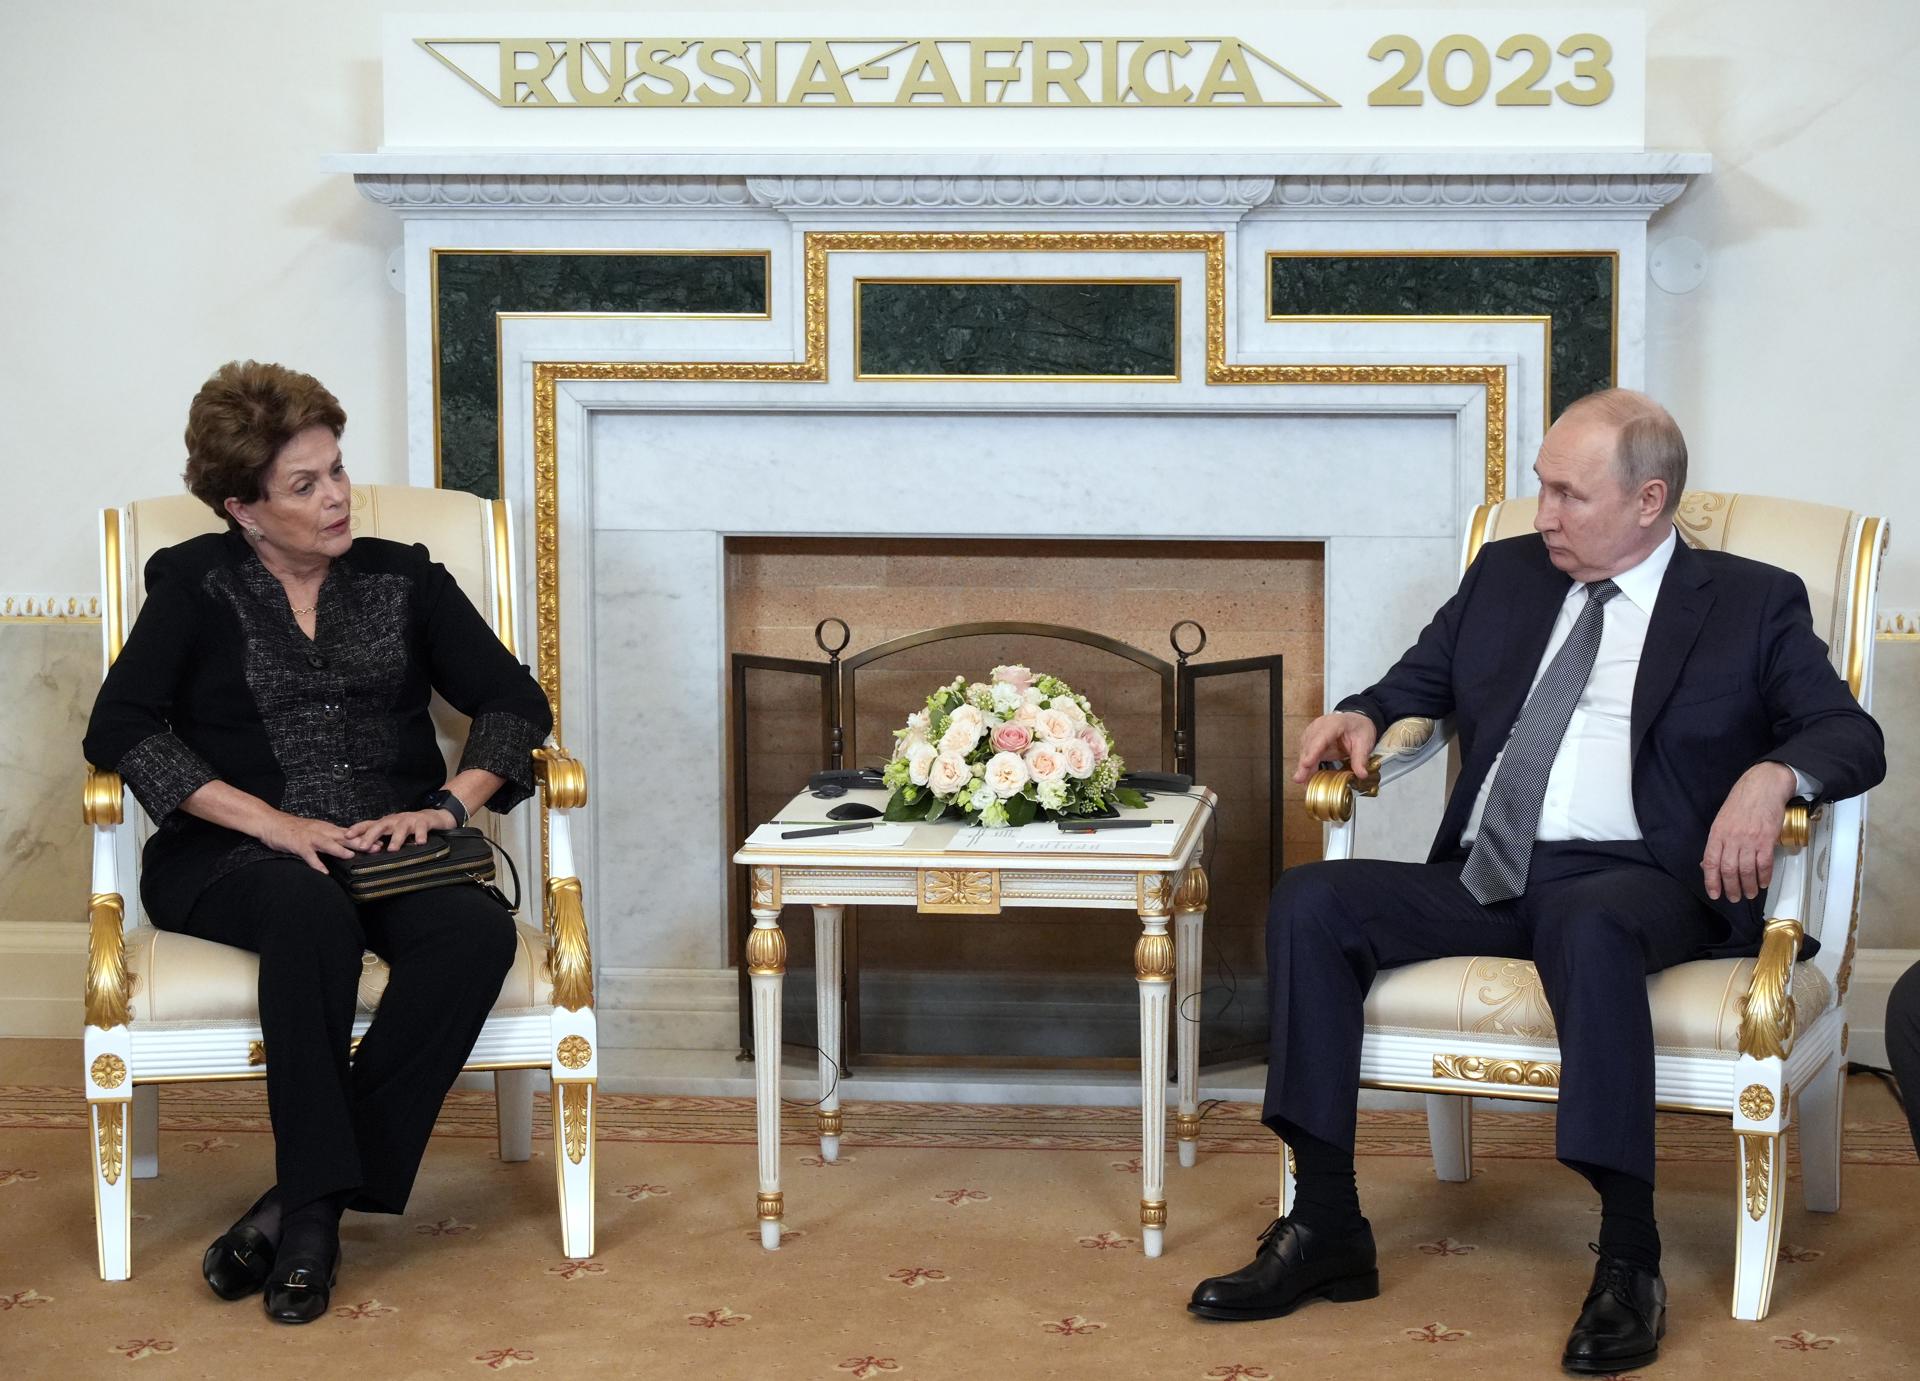 O presidente russo, Vladimir Putin, se encontra com a chefe do Banco de Desenvolvimento do Brics, Dilma Rousseff, durante sua reunião no Palácio Constantine (Konstantinovsky) em Strelna, nos arredores de São Petersburgo, Rússia, nesta quarta-feira. EFE/EPA/ALEXEY DANICHEV / SPUTNIK / KREMLIN POOL MANDATORY CREDIT